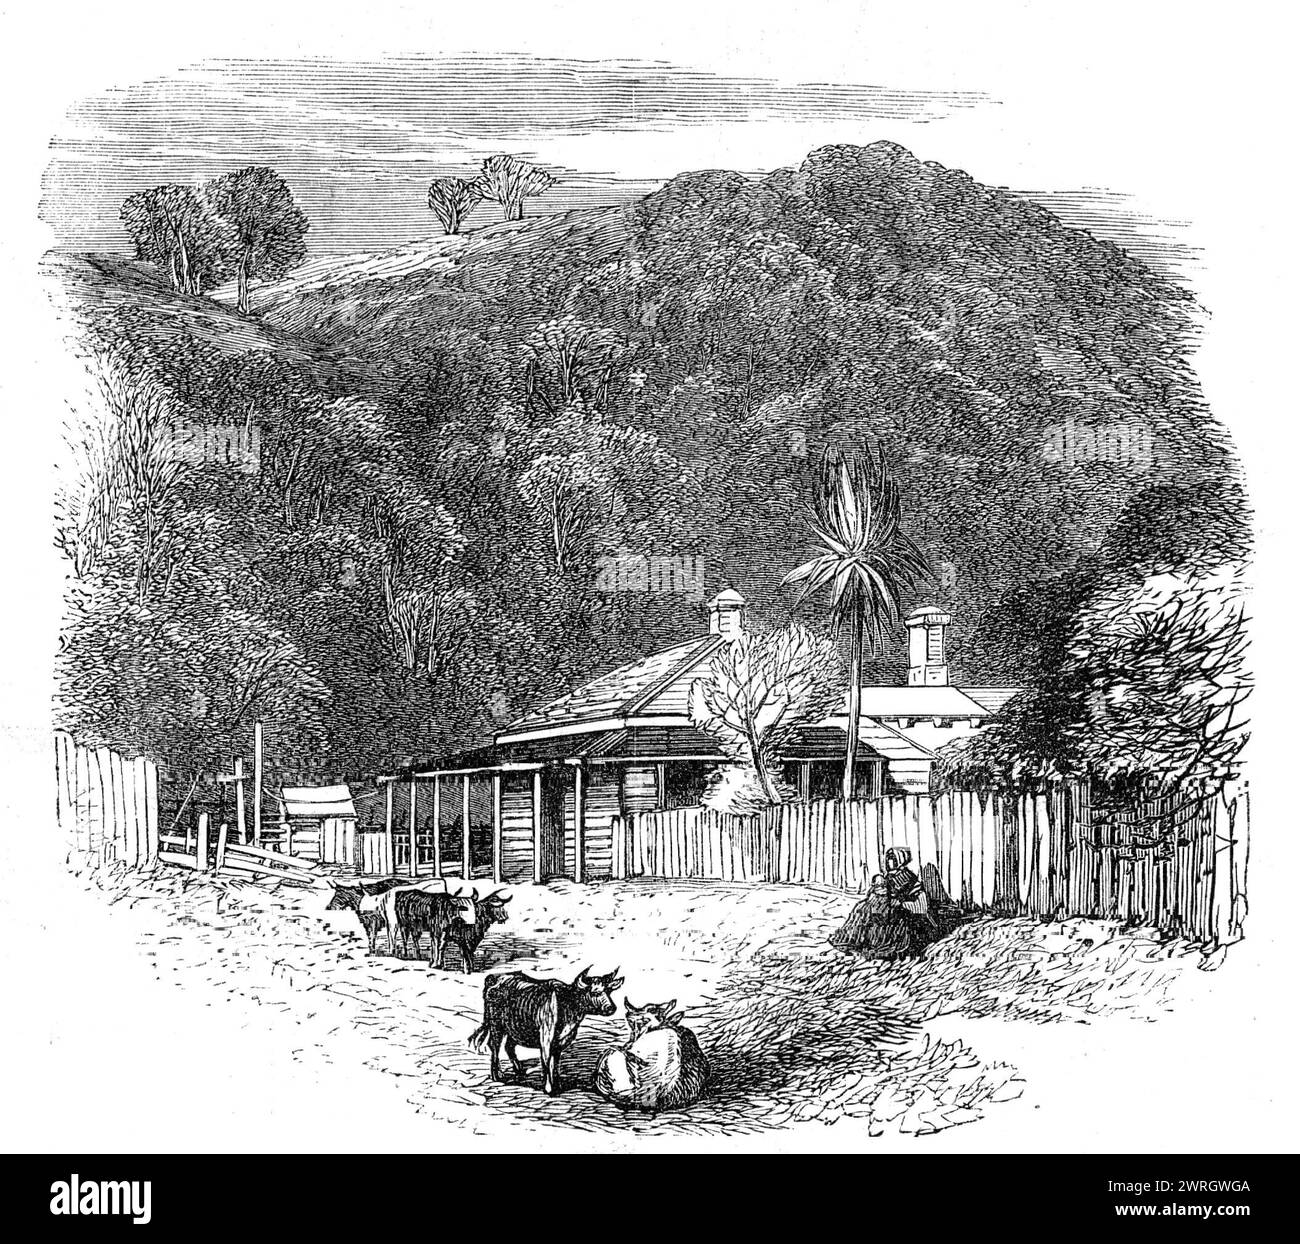 Vues au siège de la guerre en Nouvelle-Zélande : maison du colon à Waikato, 1864. Gravure d'après une photographie de Mr. A.E. Smith. 'La maison du colon est située sur le côté des têtes, pas très loin de l'église Waikato'. Tiré de "Illustrated London News", 1864. Banque D'Images